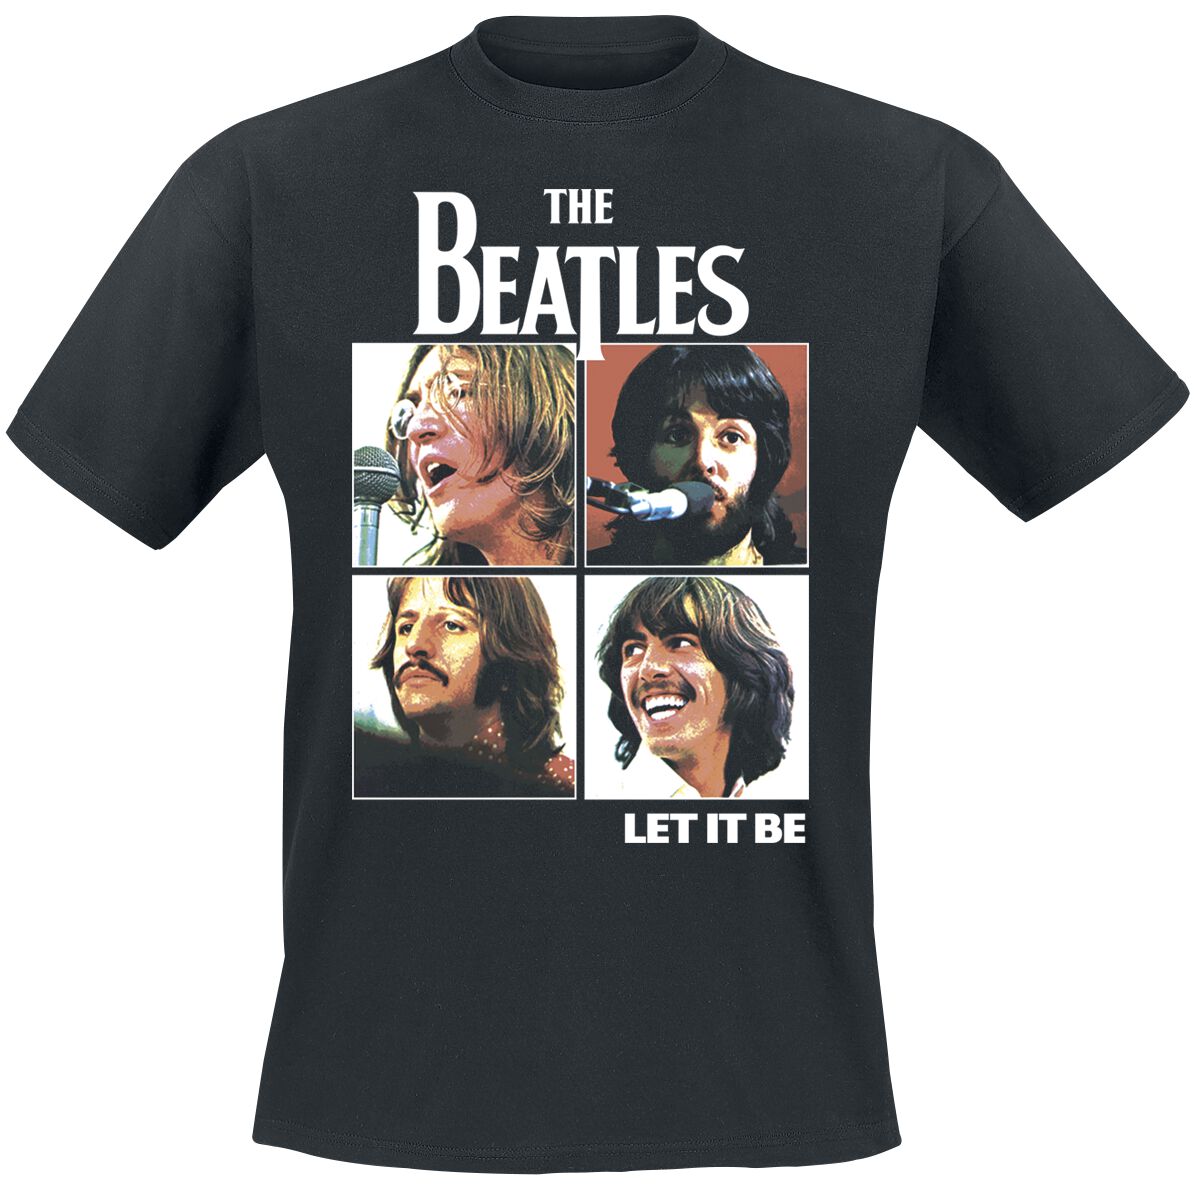 The Beatles T-Shirt - Let it be - S bis 3XL - für Männer - Größe XL - schwarz  - Lizenziertes Merchandise!